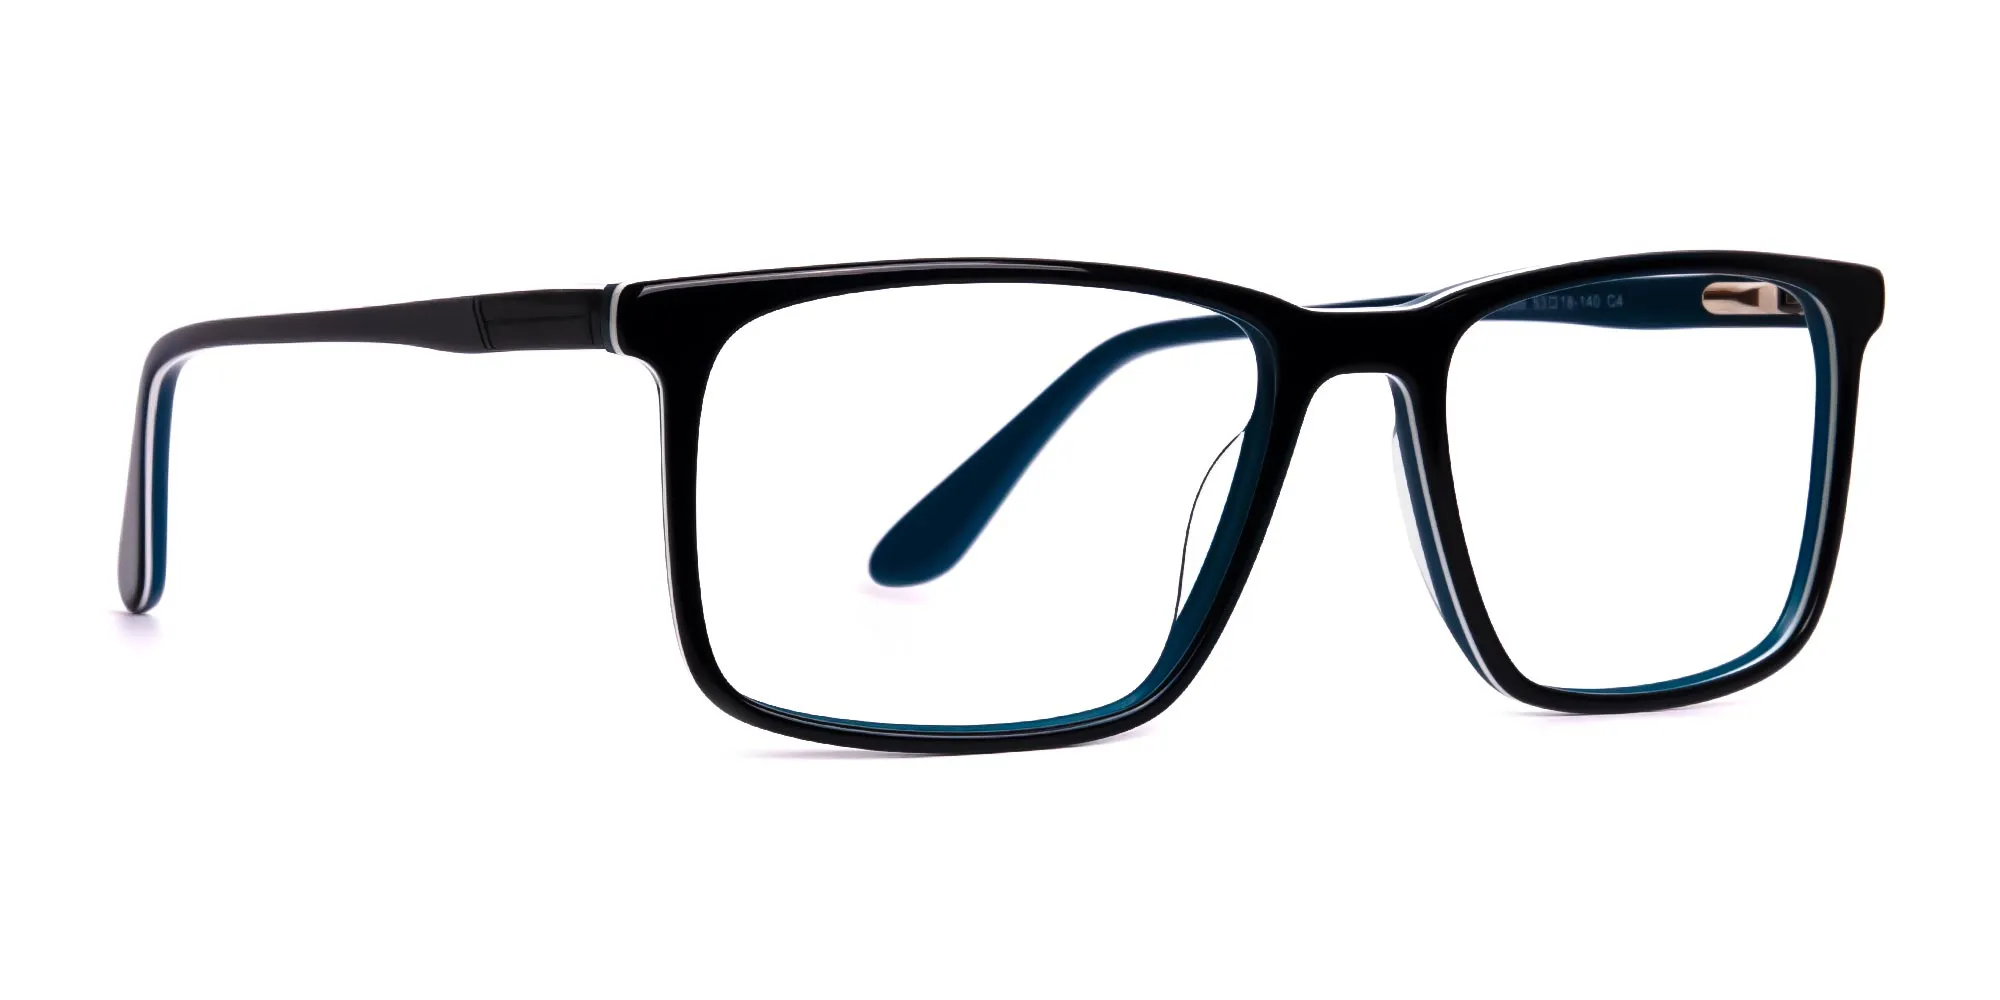 black teal full rim rectangular glasses frames-2